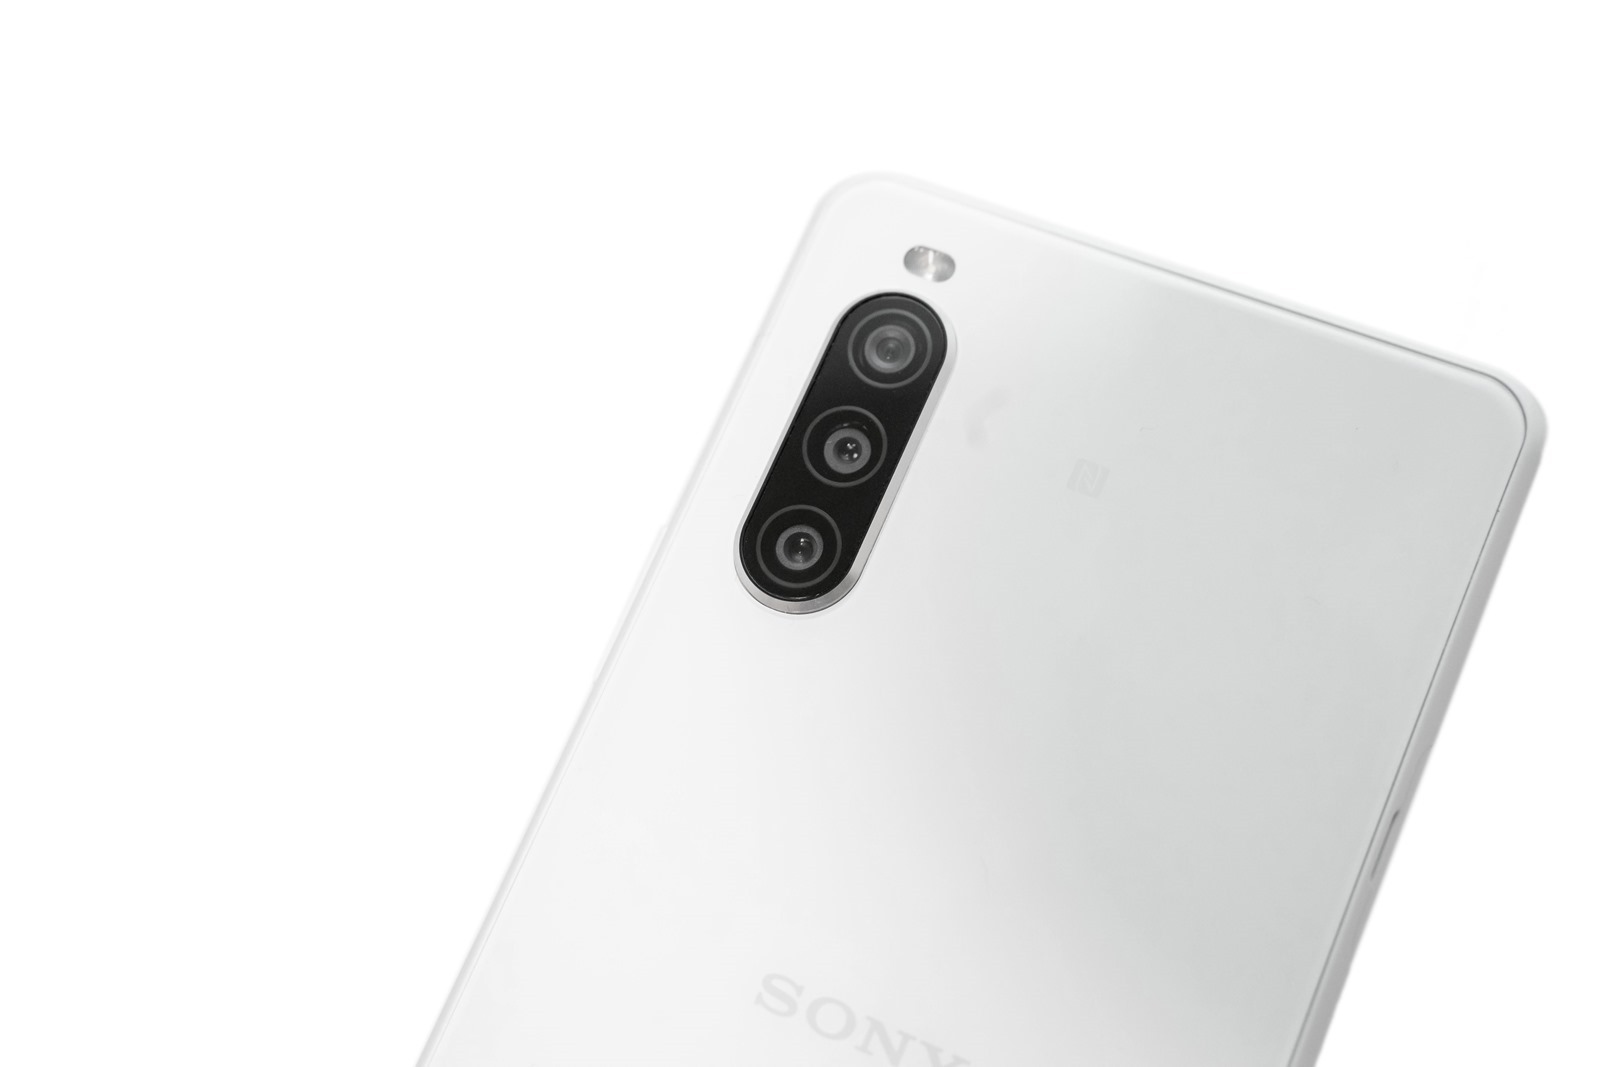 Sony Xperia 10 II 新機實測 (3) 大量實拍照看看拍照表現如何（日拍/夜間/夜景模式/自拍）@3C 達人廖阿輝